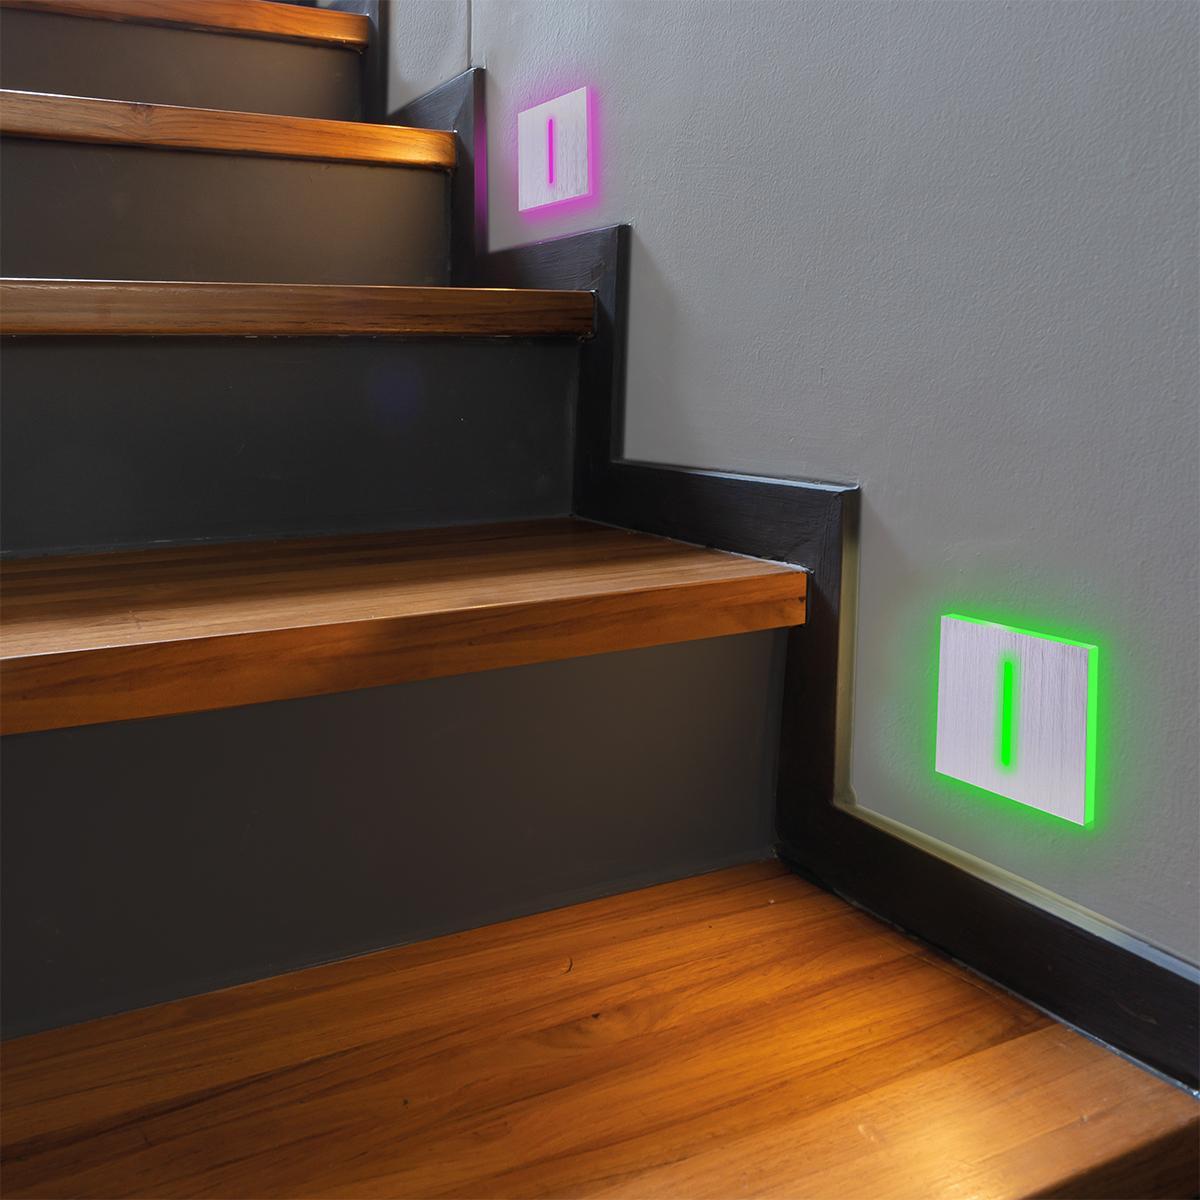 LED Treppenleuchte eckig Alu-gebürstet - Lichtfarbe: RGB Warmweiß 3W - Lichtaustritt: Fokus